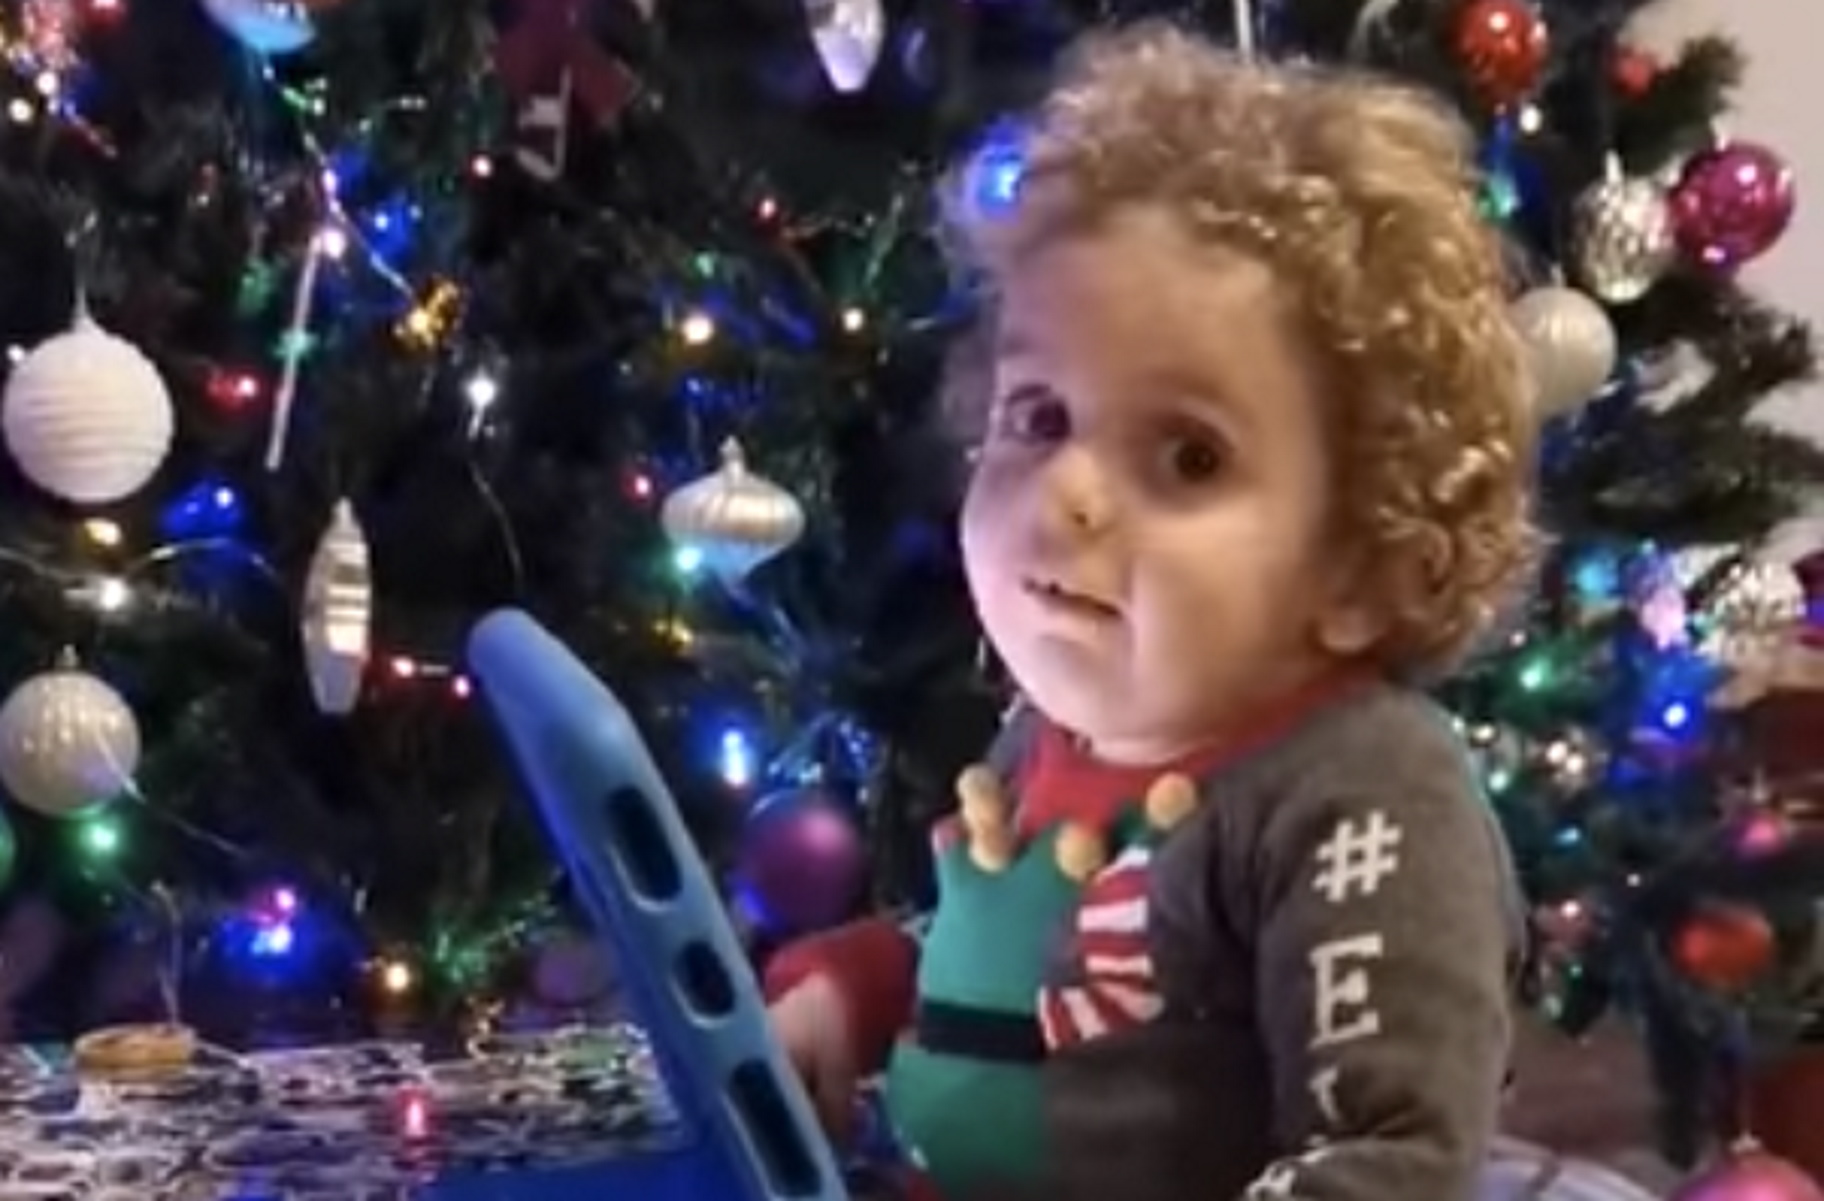 Χριστούγεννα στο σπίτι για τον μικρό Παναγιώτη Ραφαήλ: Στέλνει μήνυμα αισιοδοξίας (video)